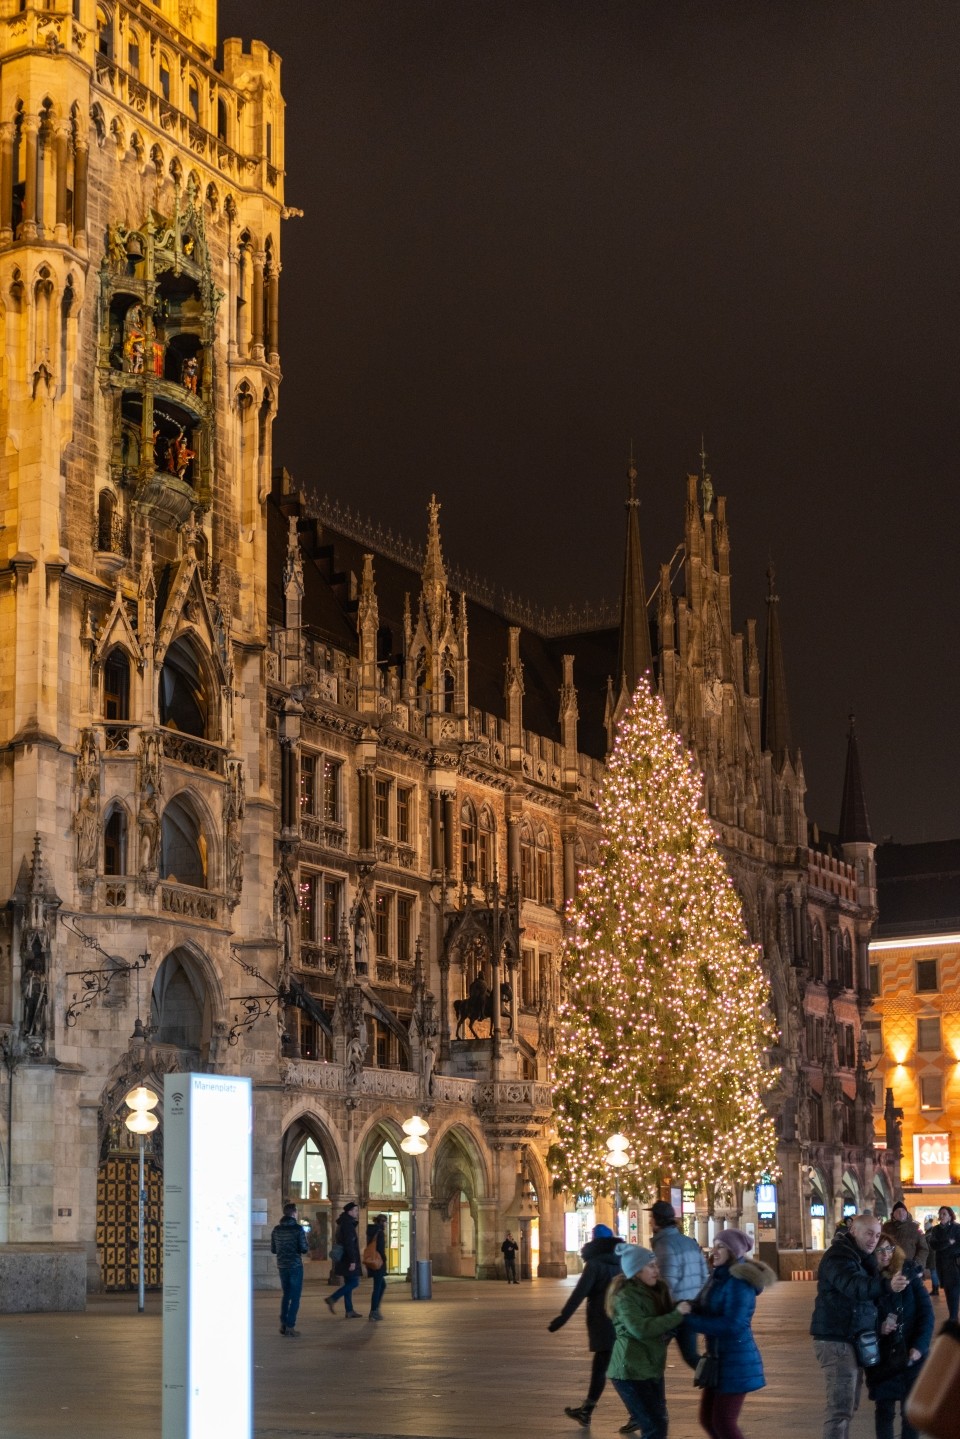 유럽세미패키지 : 유럽 여행 코스 경비 크리스마스 마켓 총정리